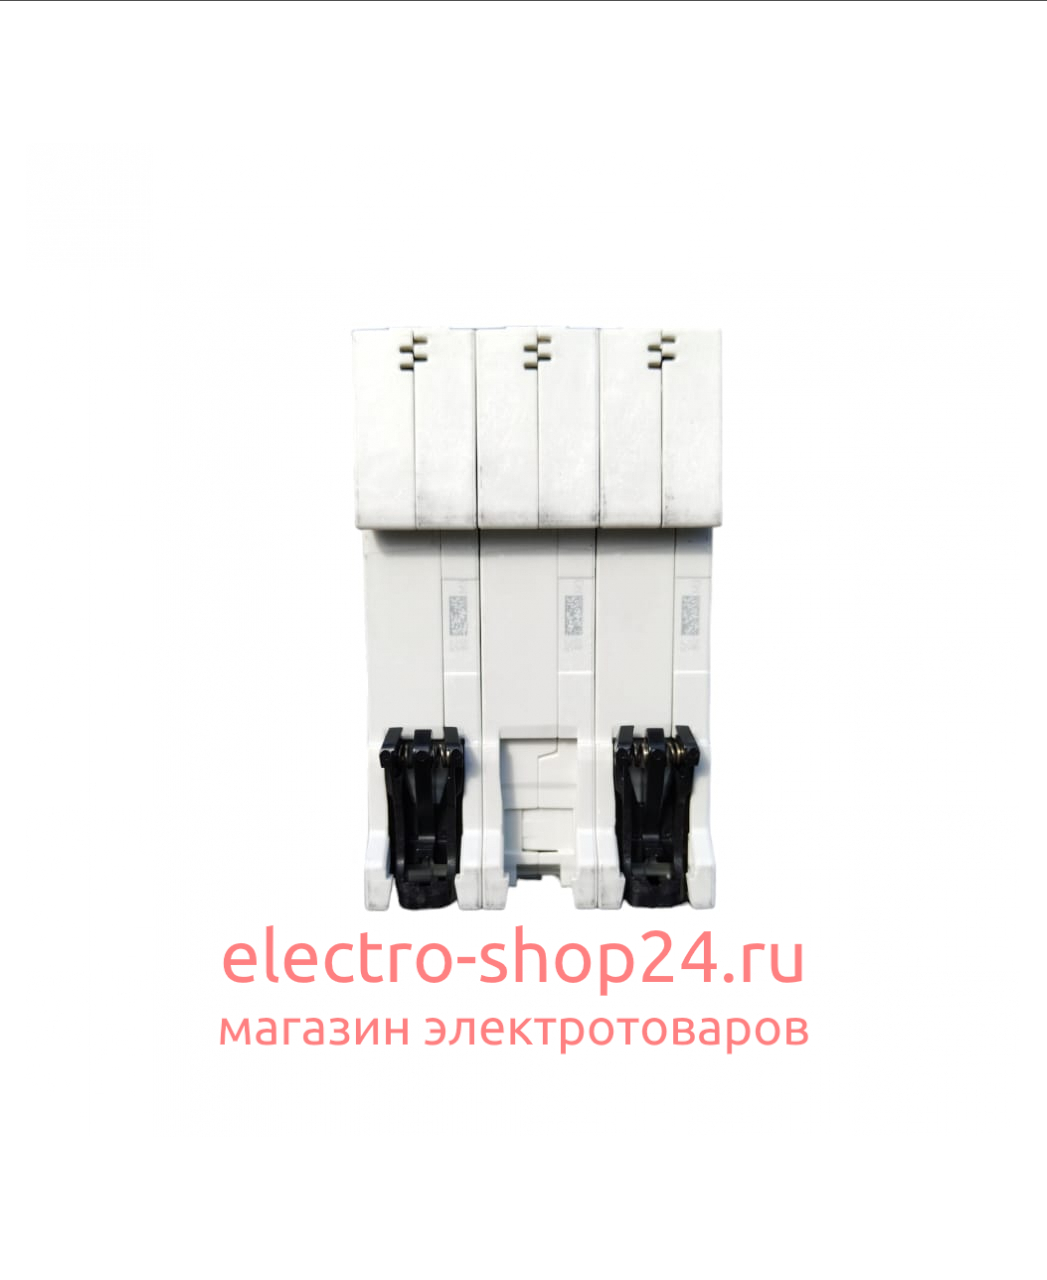 S203 C80 Автоматический выключатель 3-полюсный 80А 6кА (хар-ка C) ABB 2CDS253001R0804 2CDS253001R0804 - магазин электротехники Electroshop